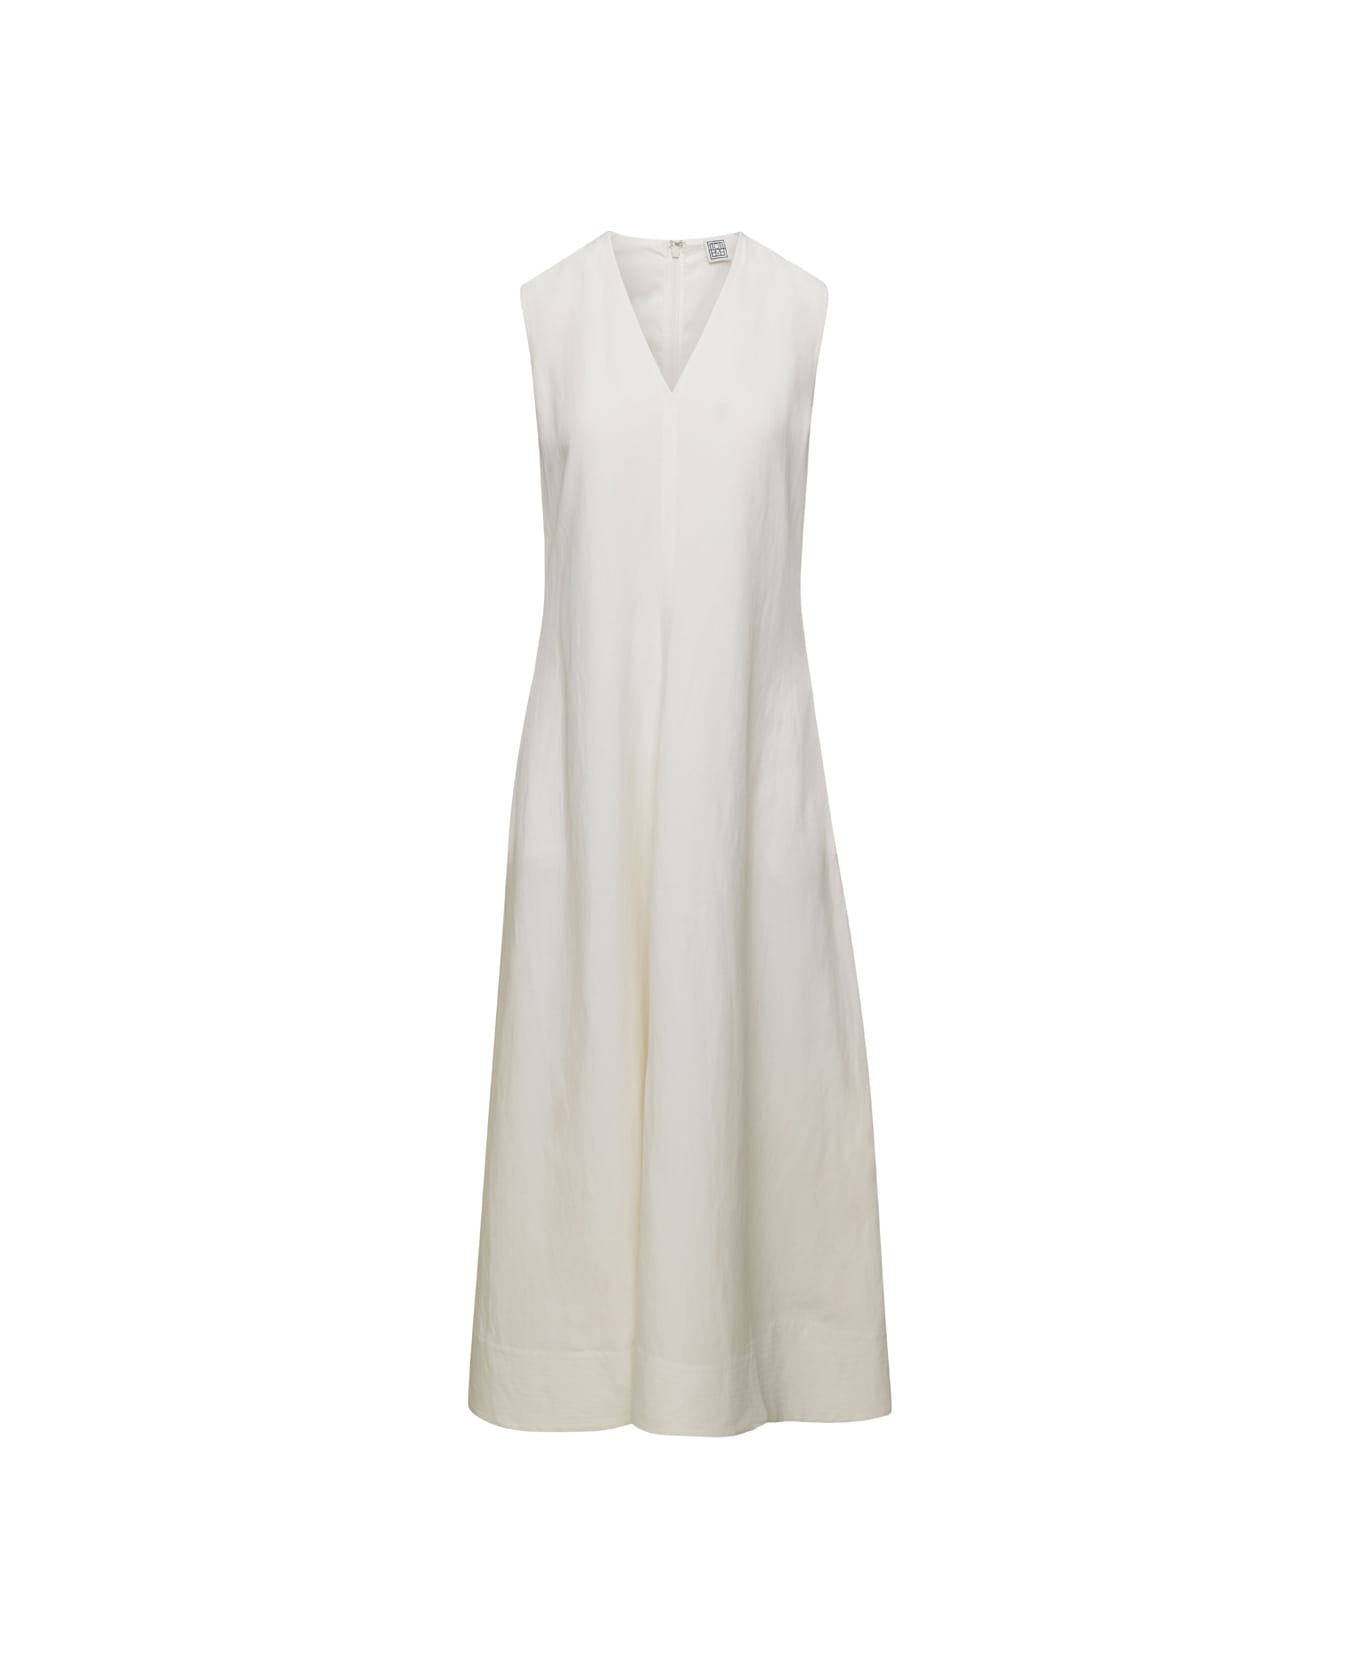 Totême White V-neck Flared Dress In Linen Blend Woman - White ワンピース＆ドレス